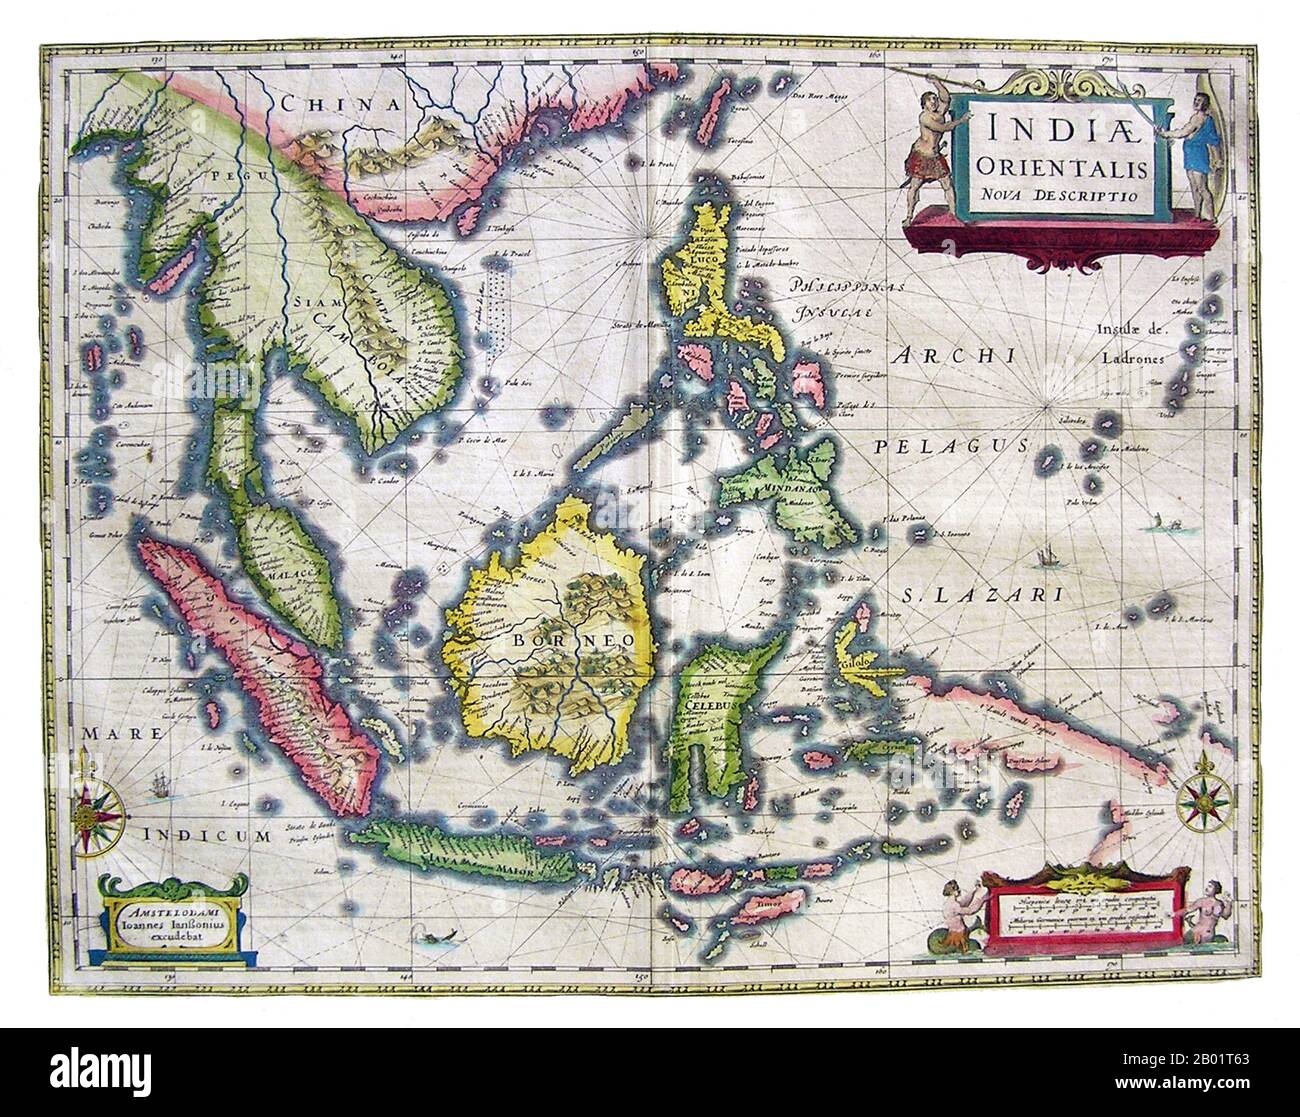 Asien: Indien Orientalis Nova Descriptio. Karte des niederländischen Kartografen Jan Jansson (1588-1664), 1636. Eine frühe Karte Südostasiens zeigt das Ausmaß und die Grenzen des europäischen Wissens über die Region. Während die größeren Inseln Indonesiens mit einiger Genauigkeit kartiert werden, sind die Südküste von Java und die Kleinen Sundas nur in allgemeiner Form kartiert, und Neuguinea ist besonders unvollständig. In allen Gebieten sehen wir Küstenmerkmale und Siedlungen, aber es gibt wenig Details im Inneren. Die Philippinen sind gut beschrieben, und die Marianen (Ladrones) werden übermäßig groß und bekannt. Stockfoto